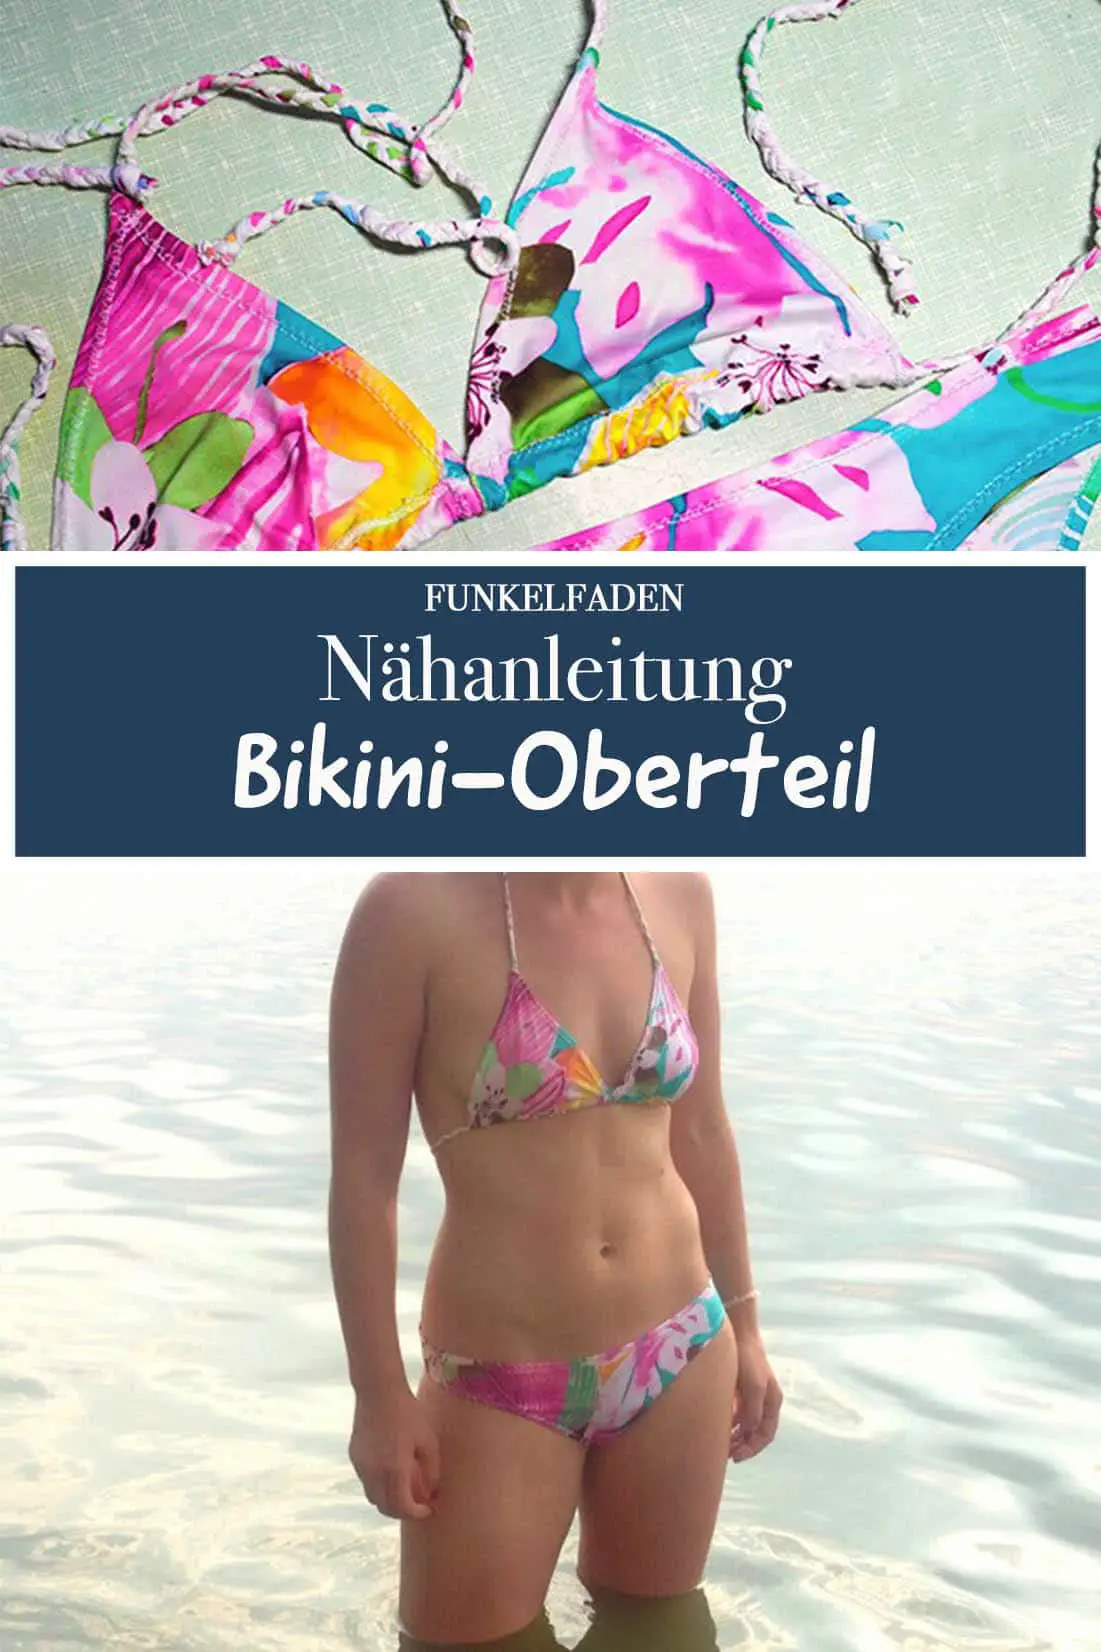 Nähanleitung Bikini-Oberteil